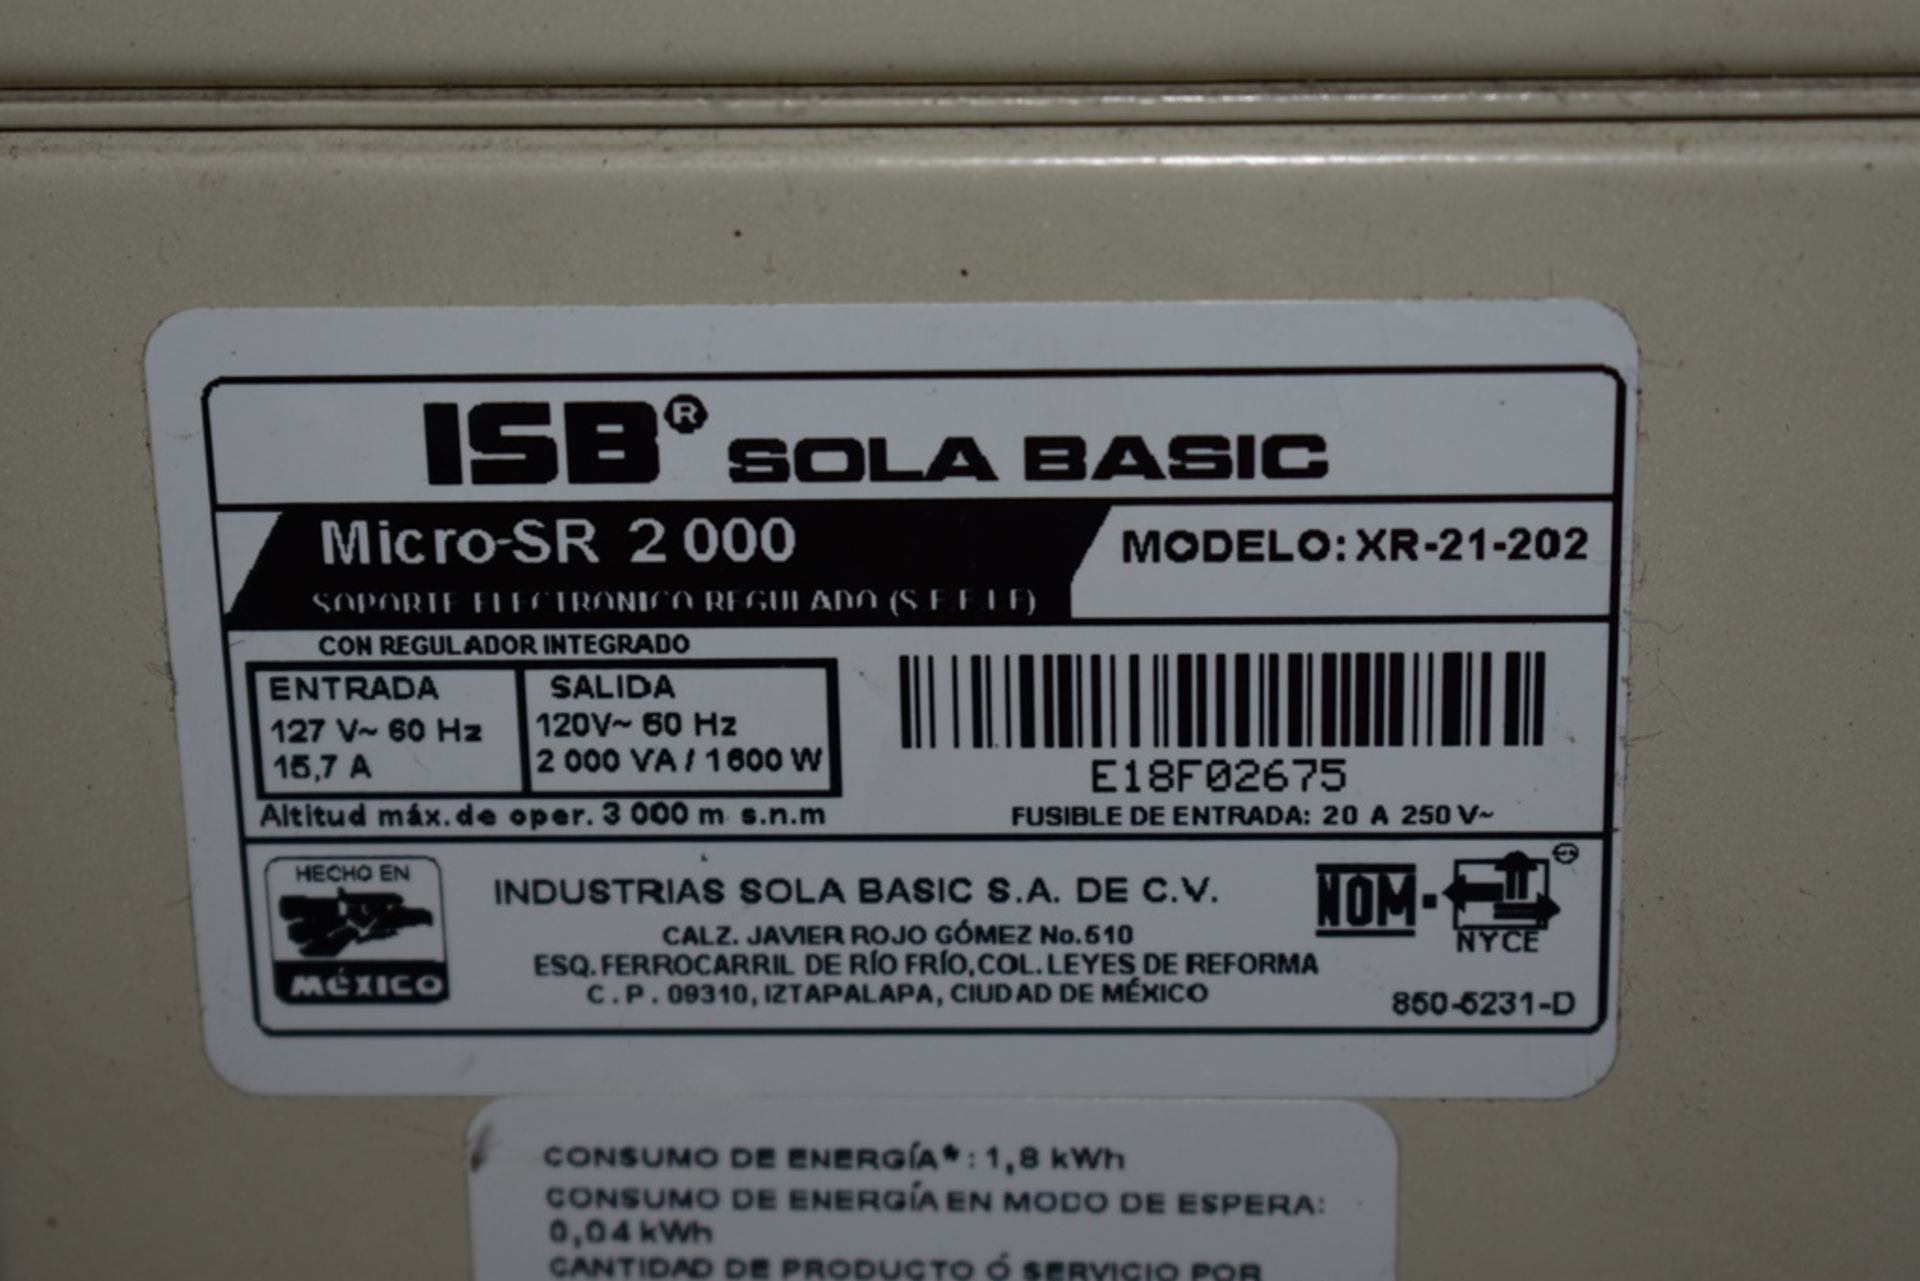 Dos reguladores de voltaje marca ISB Solabasic, modelo: XR-21-202, Series: E18F02675, E18H01516 - Image 14 of 17